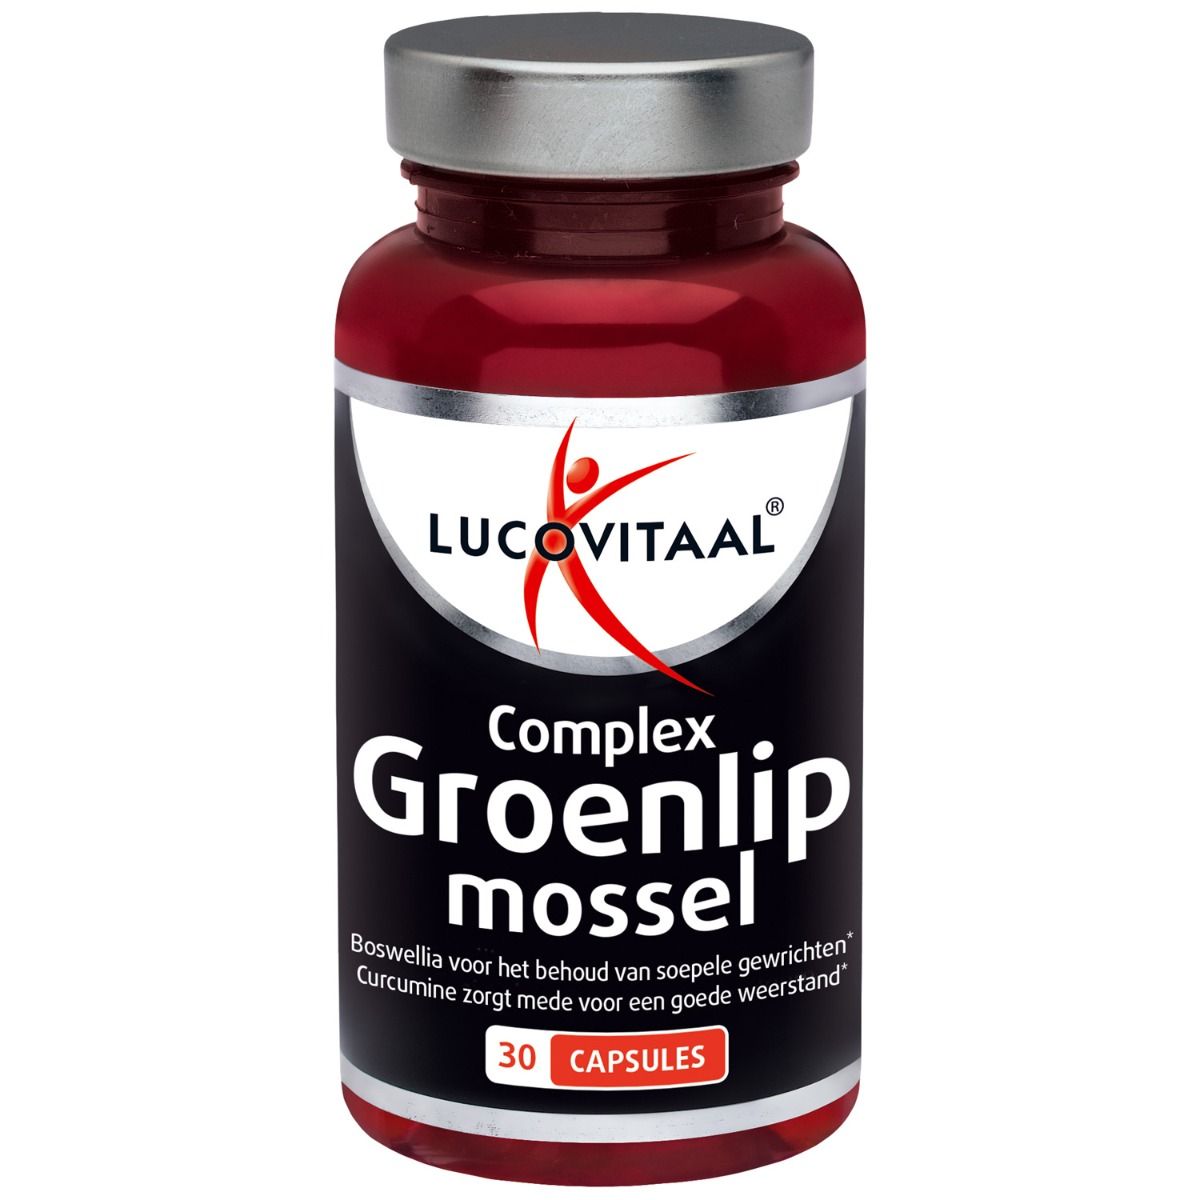 Groenlipmossel capsules Lucovitaal: Krachtig & Goedkoop!